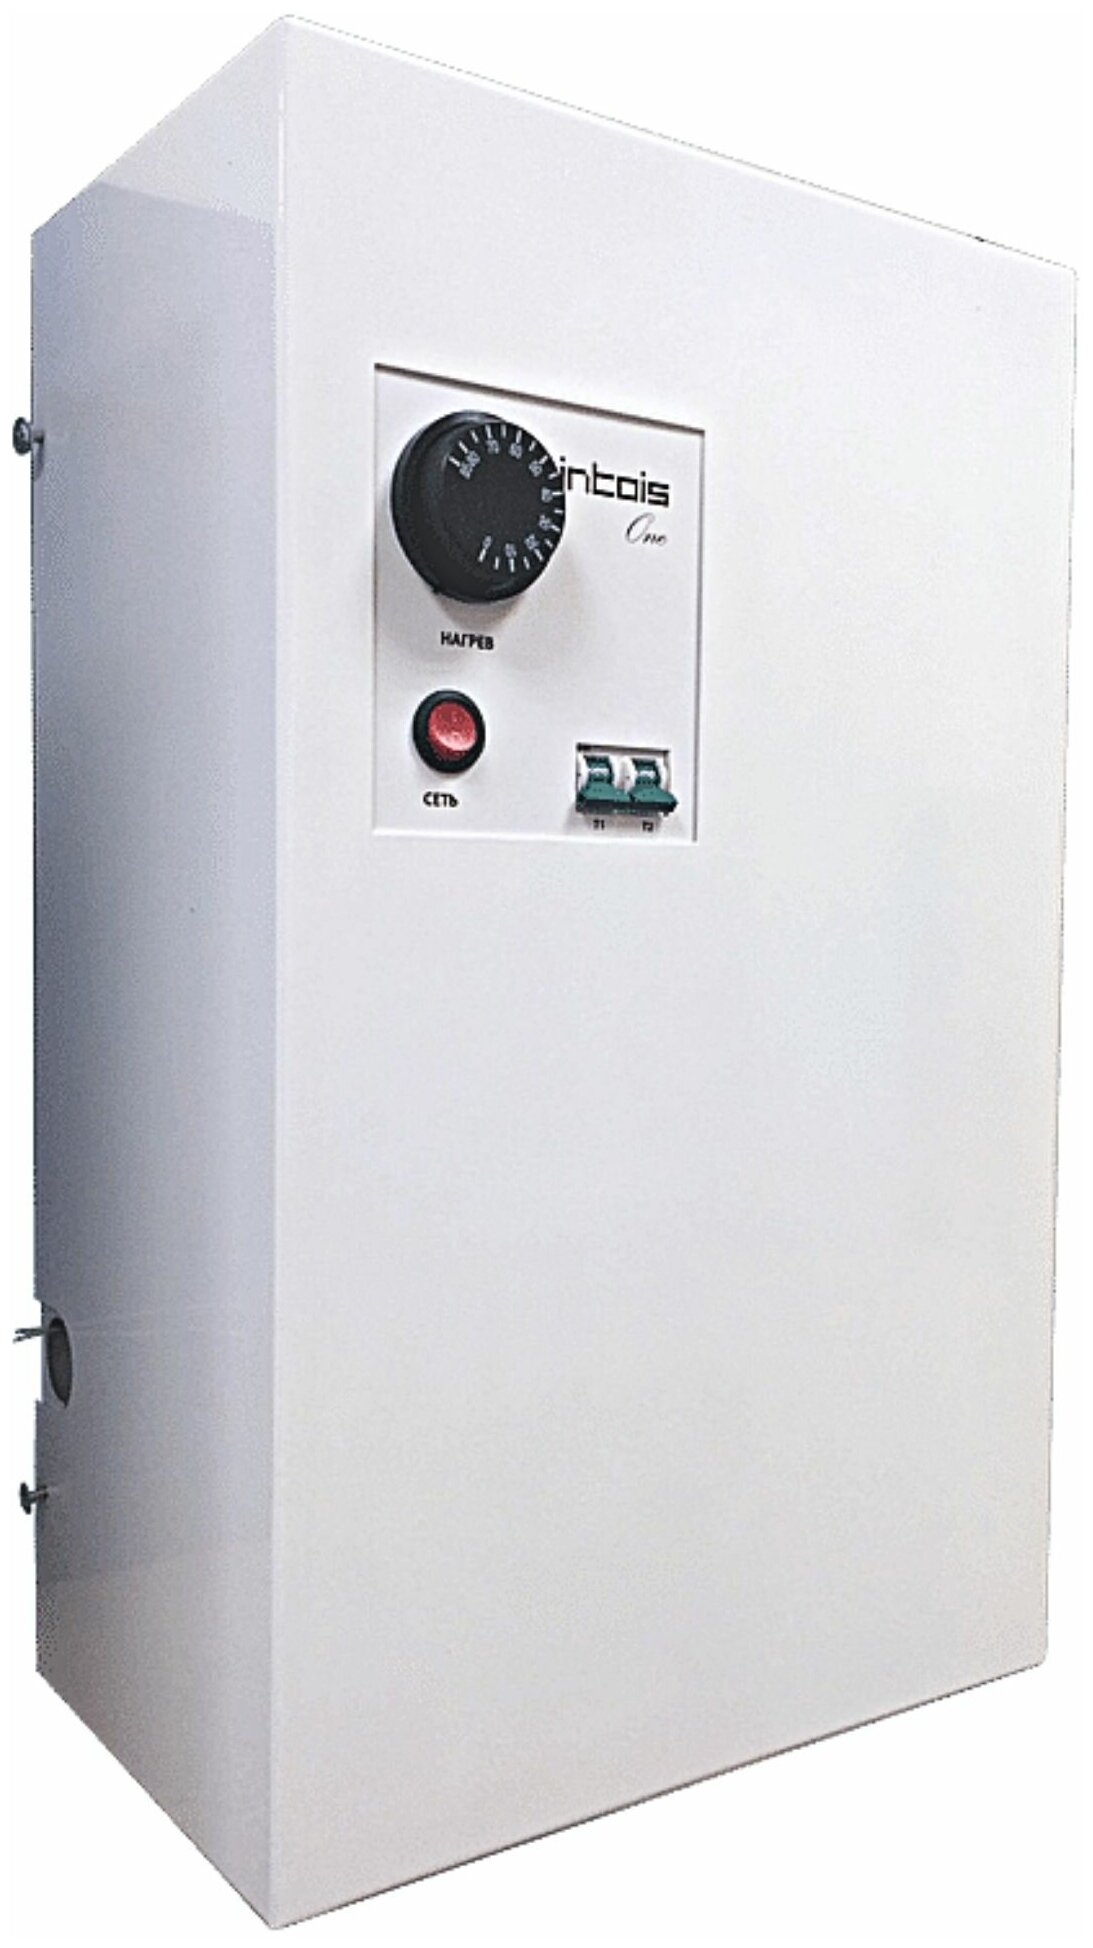 Электрический котел отопления электрокотел Интоис One 4 кВт настенный одноконтурный.